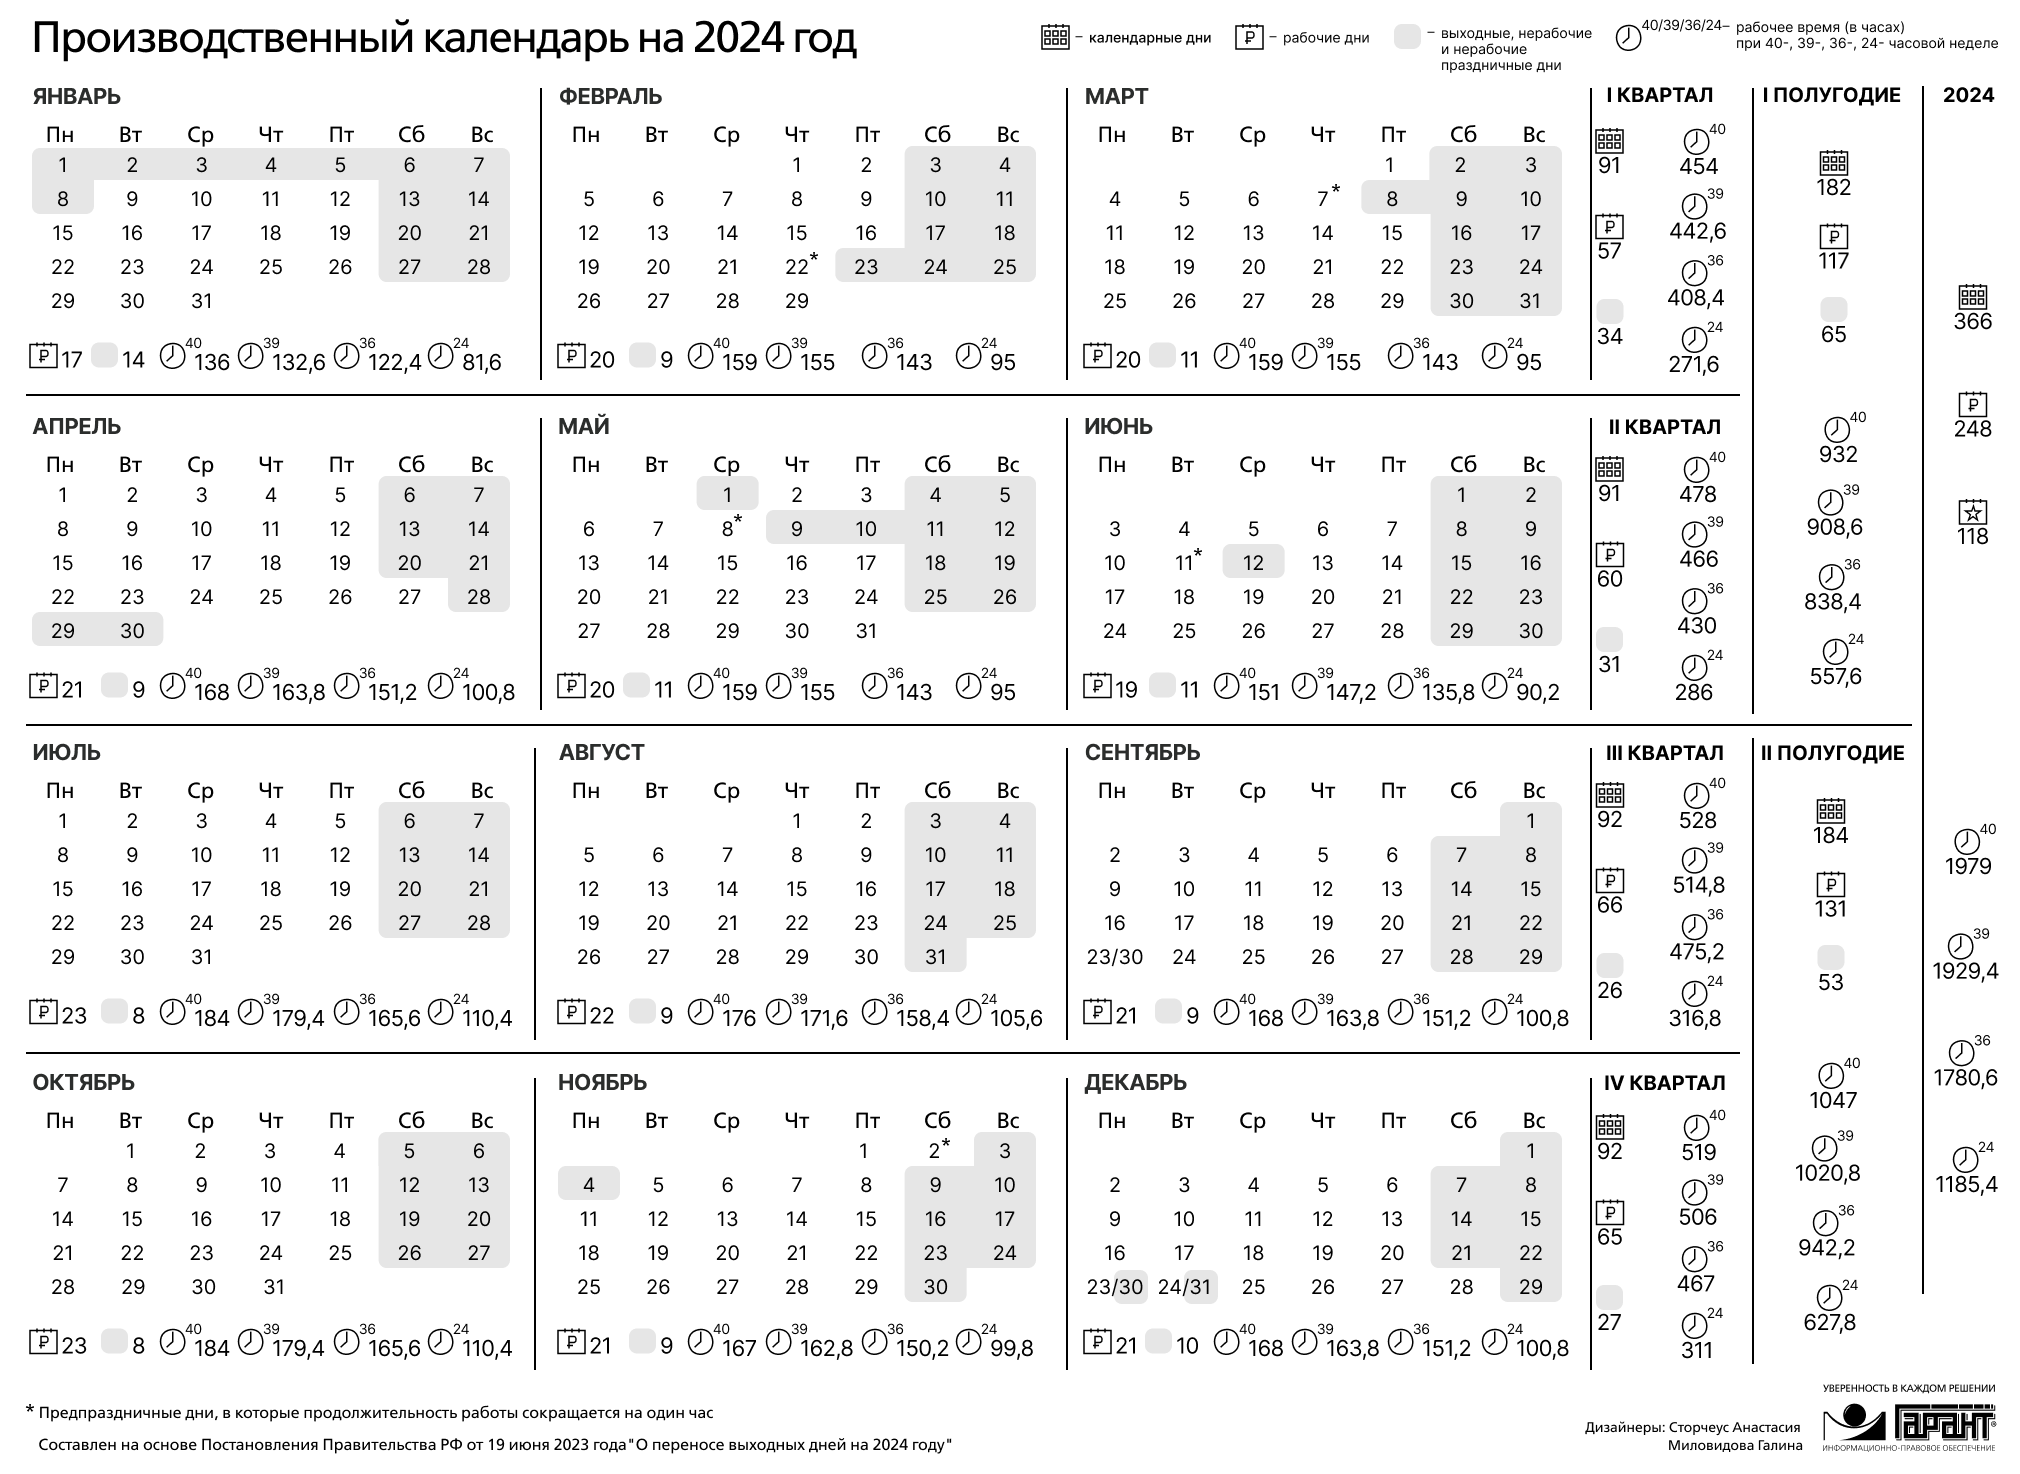 Статус 08 в 2024 году. Праздничные дни 2024 года в России производственный календарь. Календарь на 2024 год с праздниками и выходными производственный РФ. Производственный календарь на 2024 го од. Зводственный календарь на 2024.